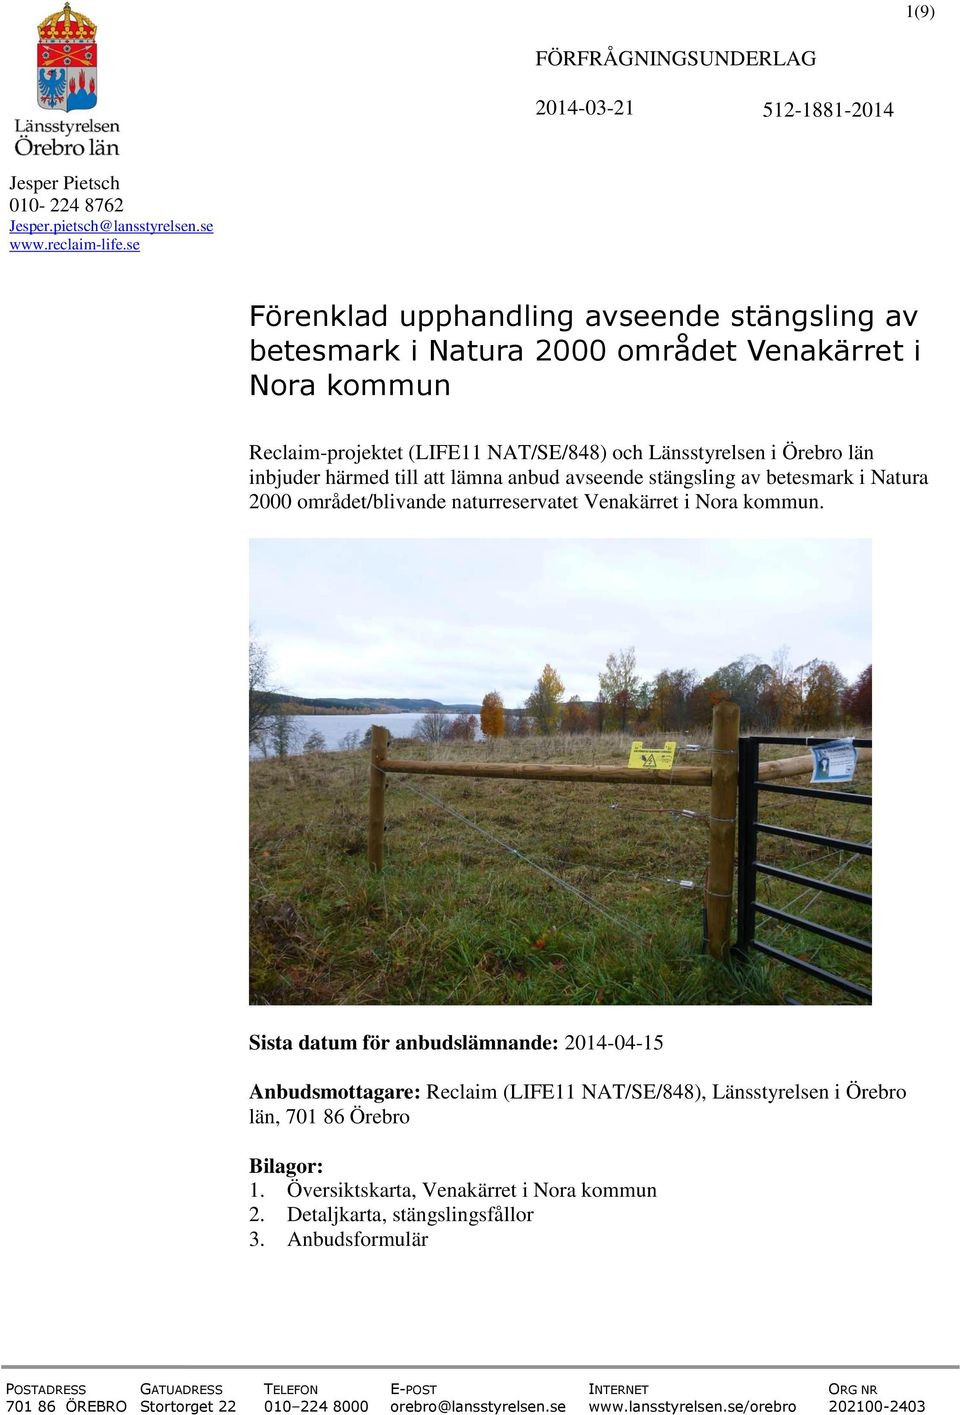 lämna anbud avseende stängsling av betesmark i Natura 2000 området/blivande naturreservatet Venakärret i Nora kommun.